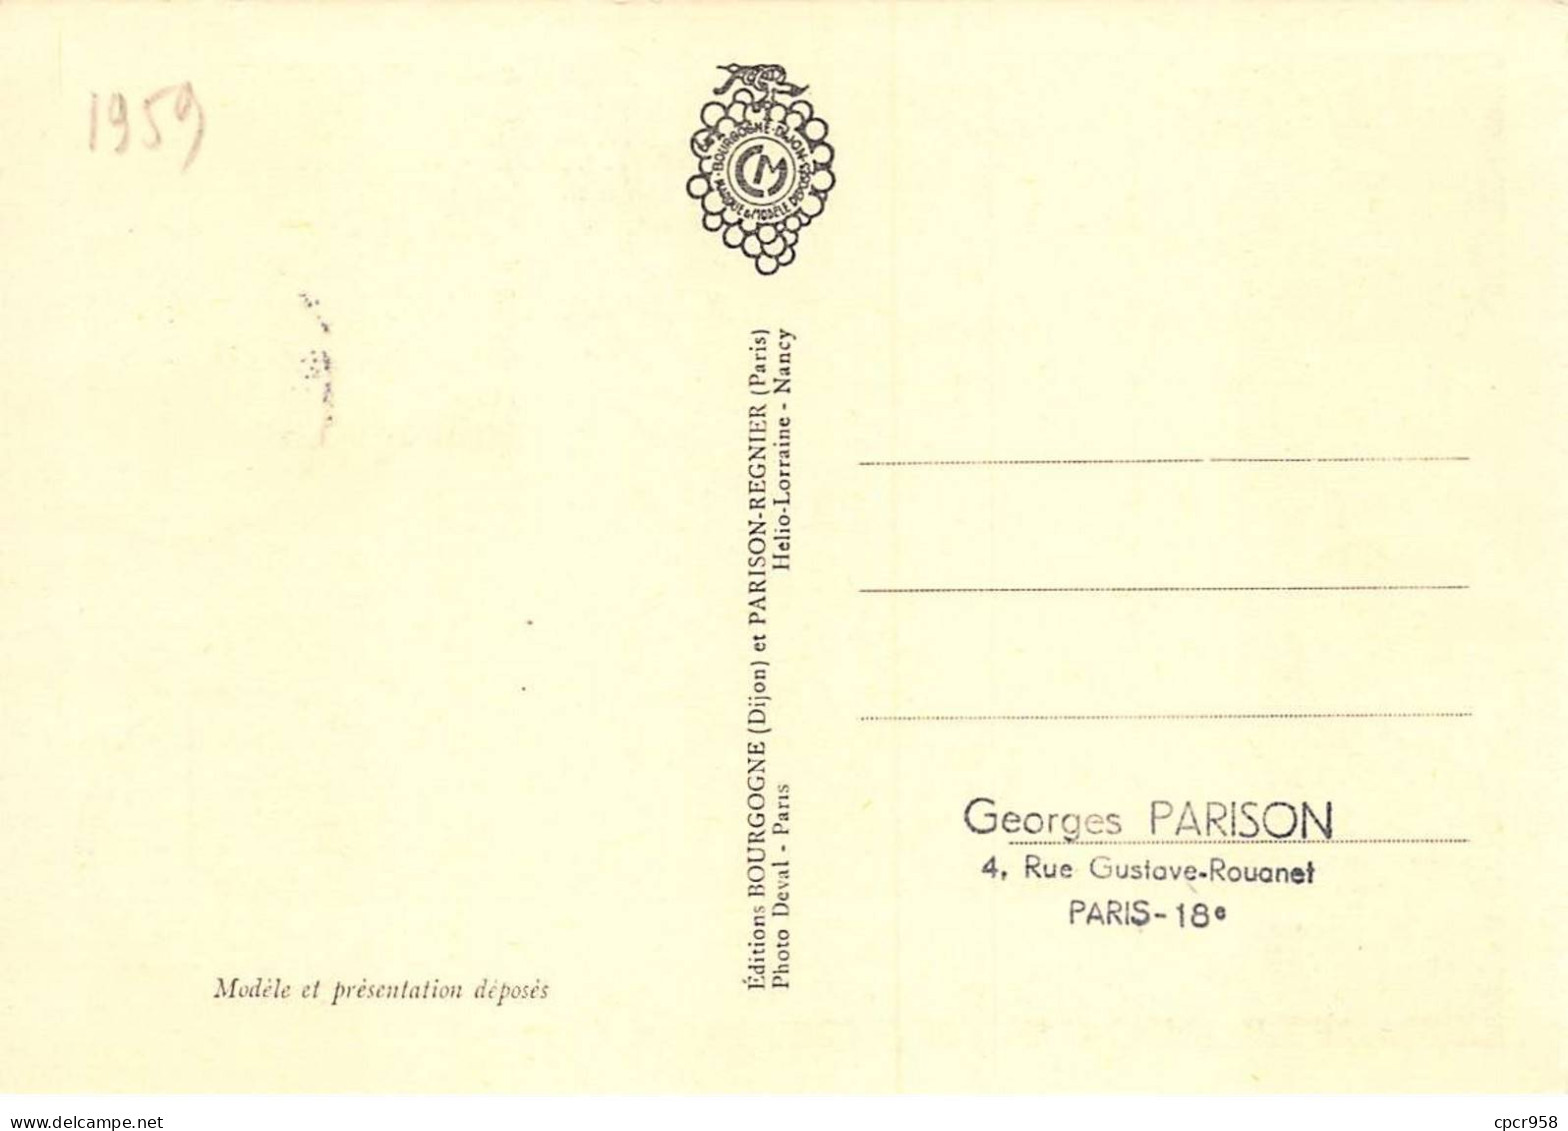 Carte Maximum - FRANCE - COR12729 - 11/04/1959 - Ecole Nationale Supérieure Des Mines - Cachet Paris - 1950-1959